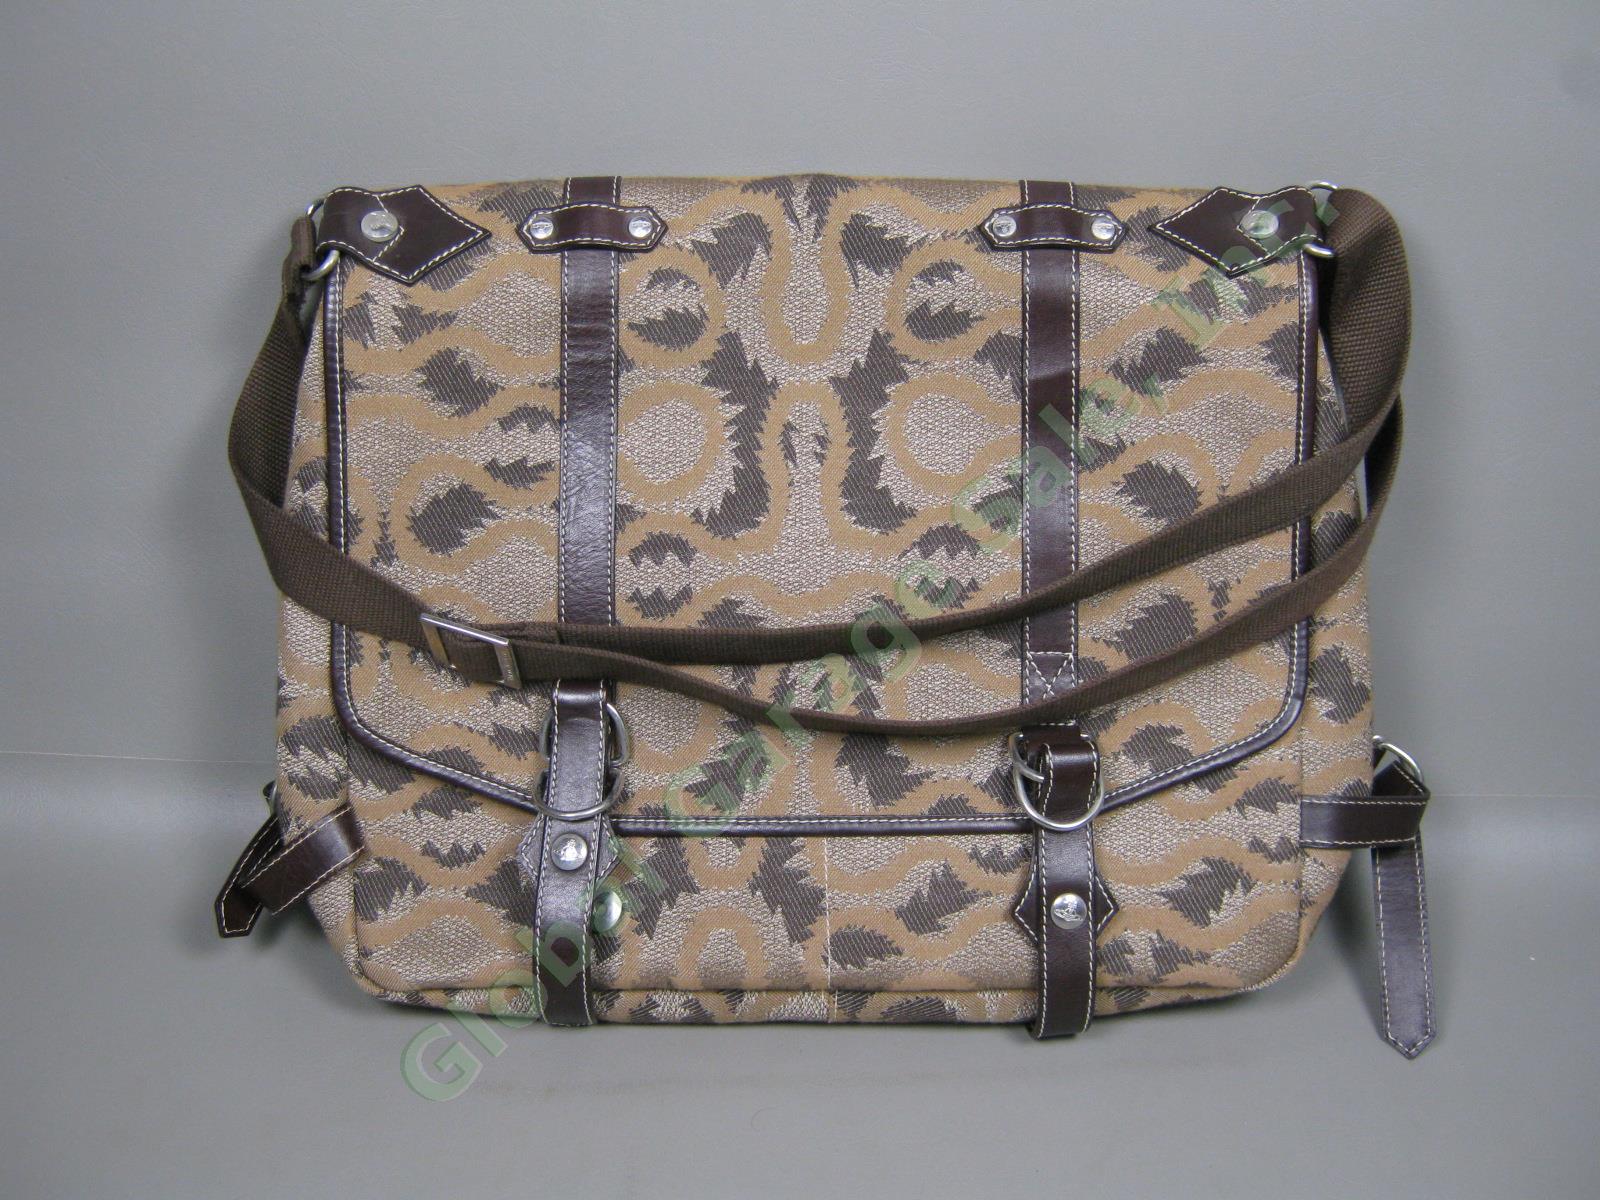 NEW Vivienne Westwood 2 Sided Shoulder Messenger Travel Bag Leather Trim Italy 2